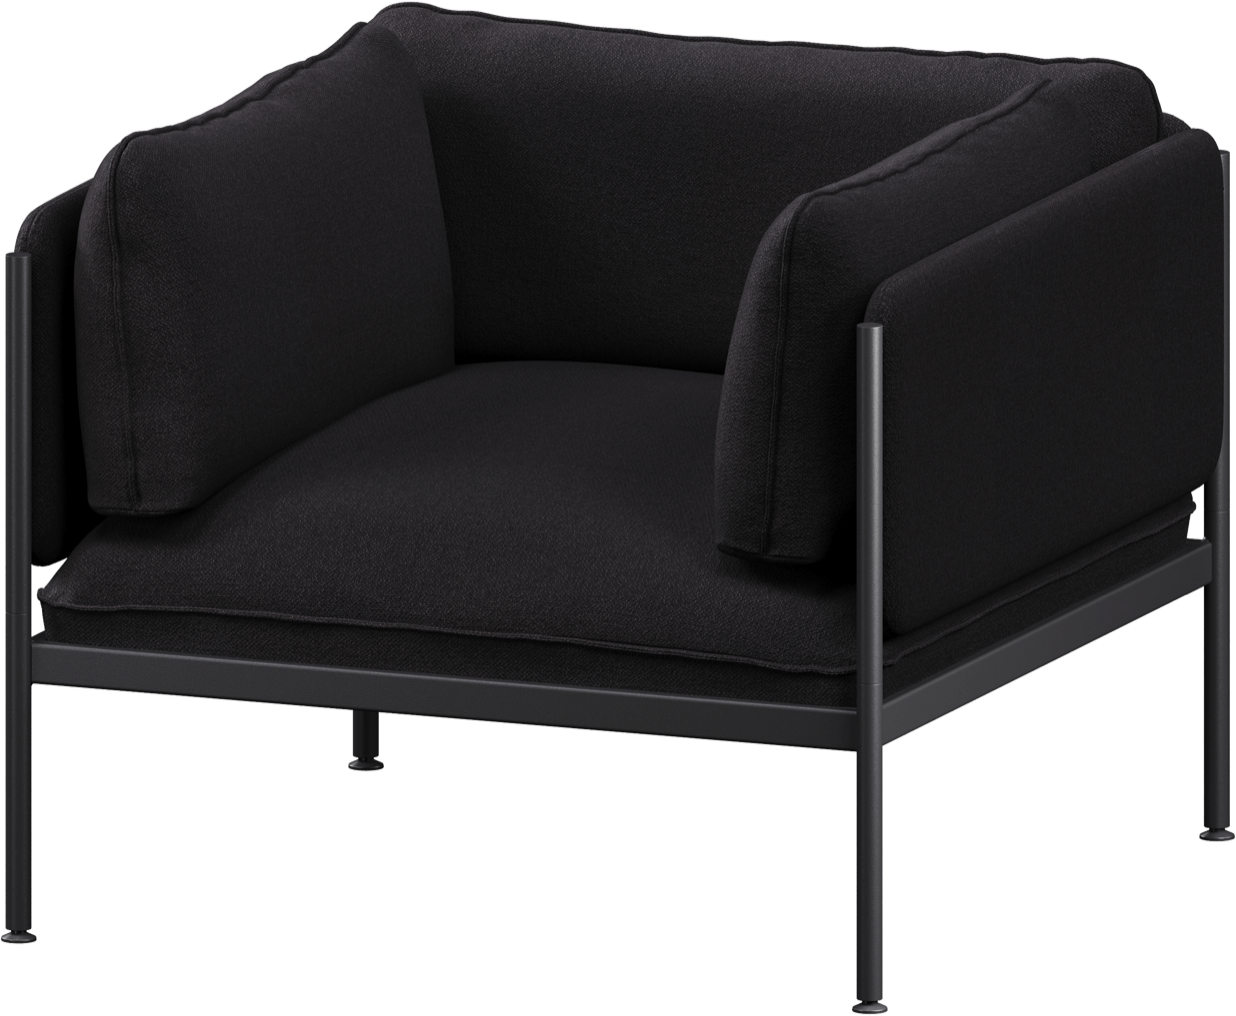 Toom Modular Sessel in Graphite Black  präsentiert im Onlineshop von KAQTU Design AG. Sessel mit Armlehnen ist von Noo.ma